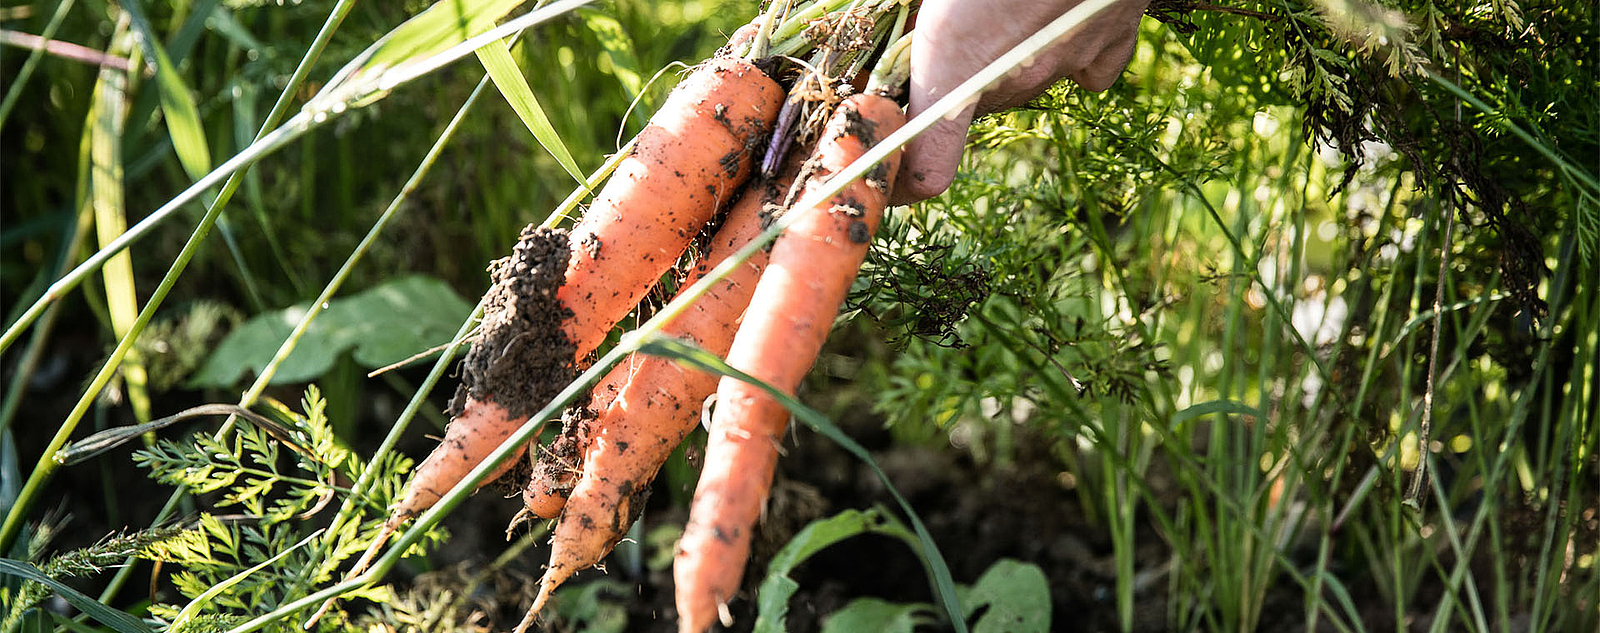 Karotten werden aus der Erde gezogen